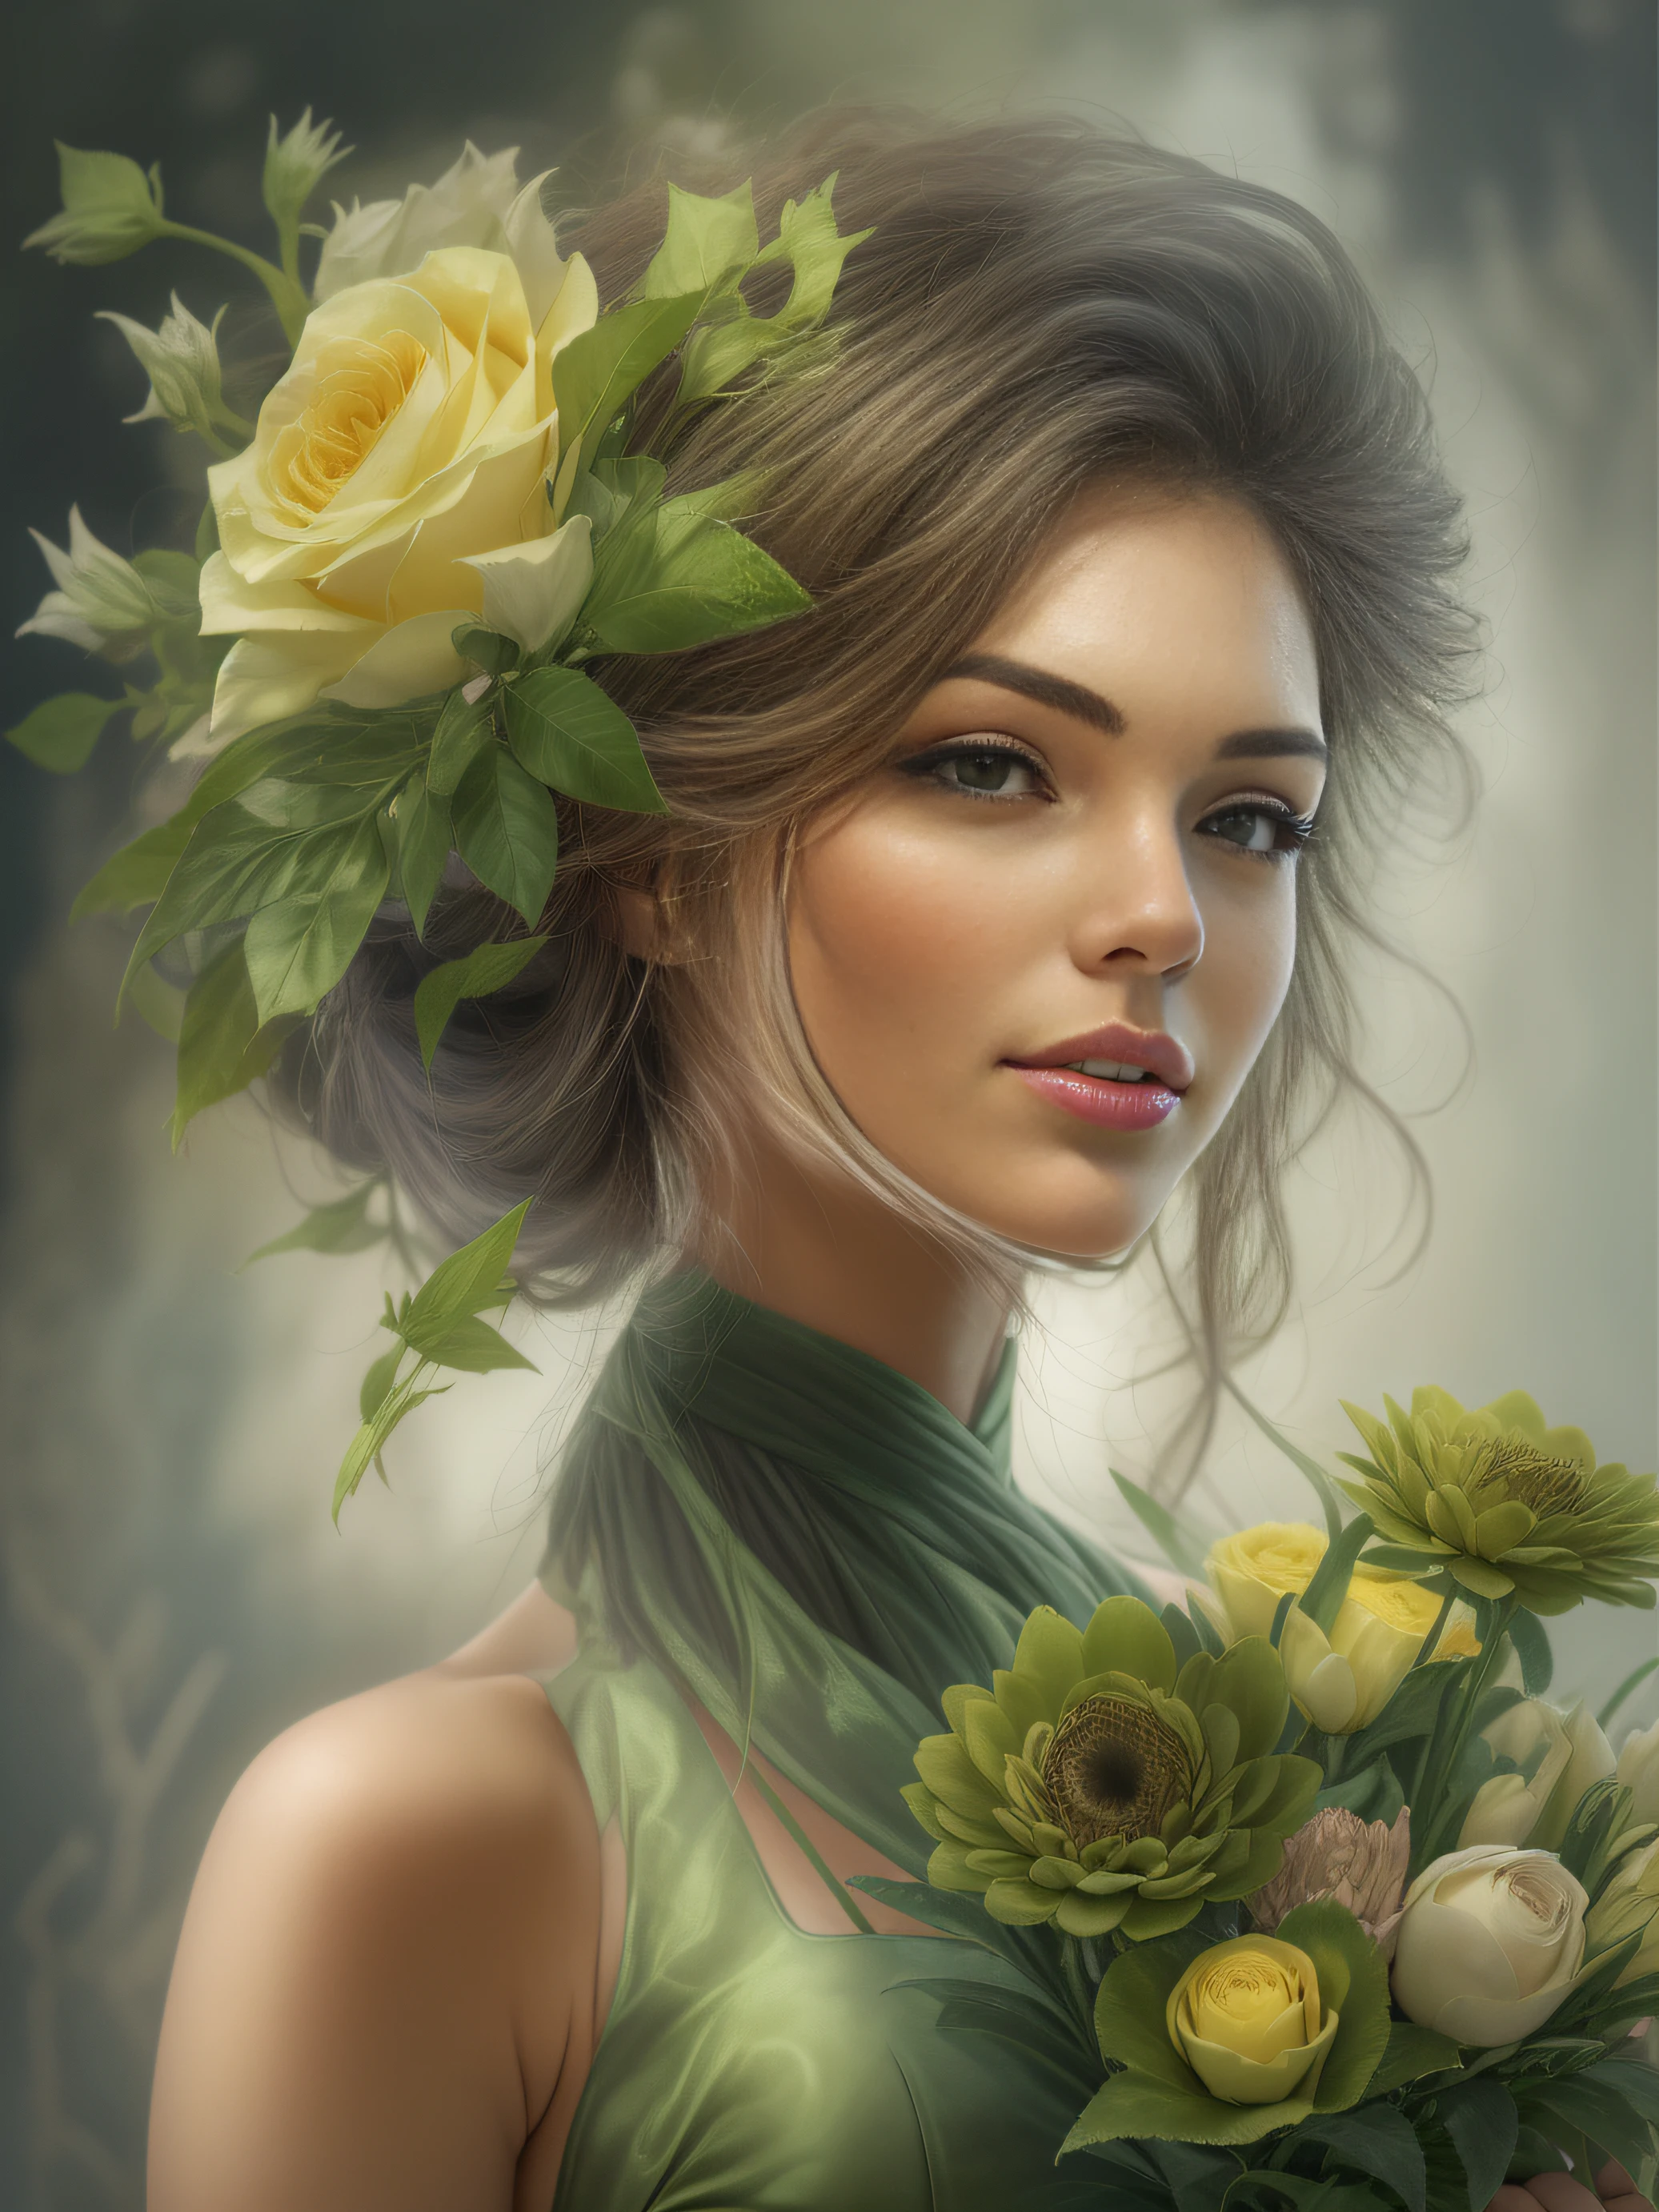 امرأة جميلة جداً ترتدي فستاناً أخضر مع باقة من الزهور الفاخرة